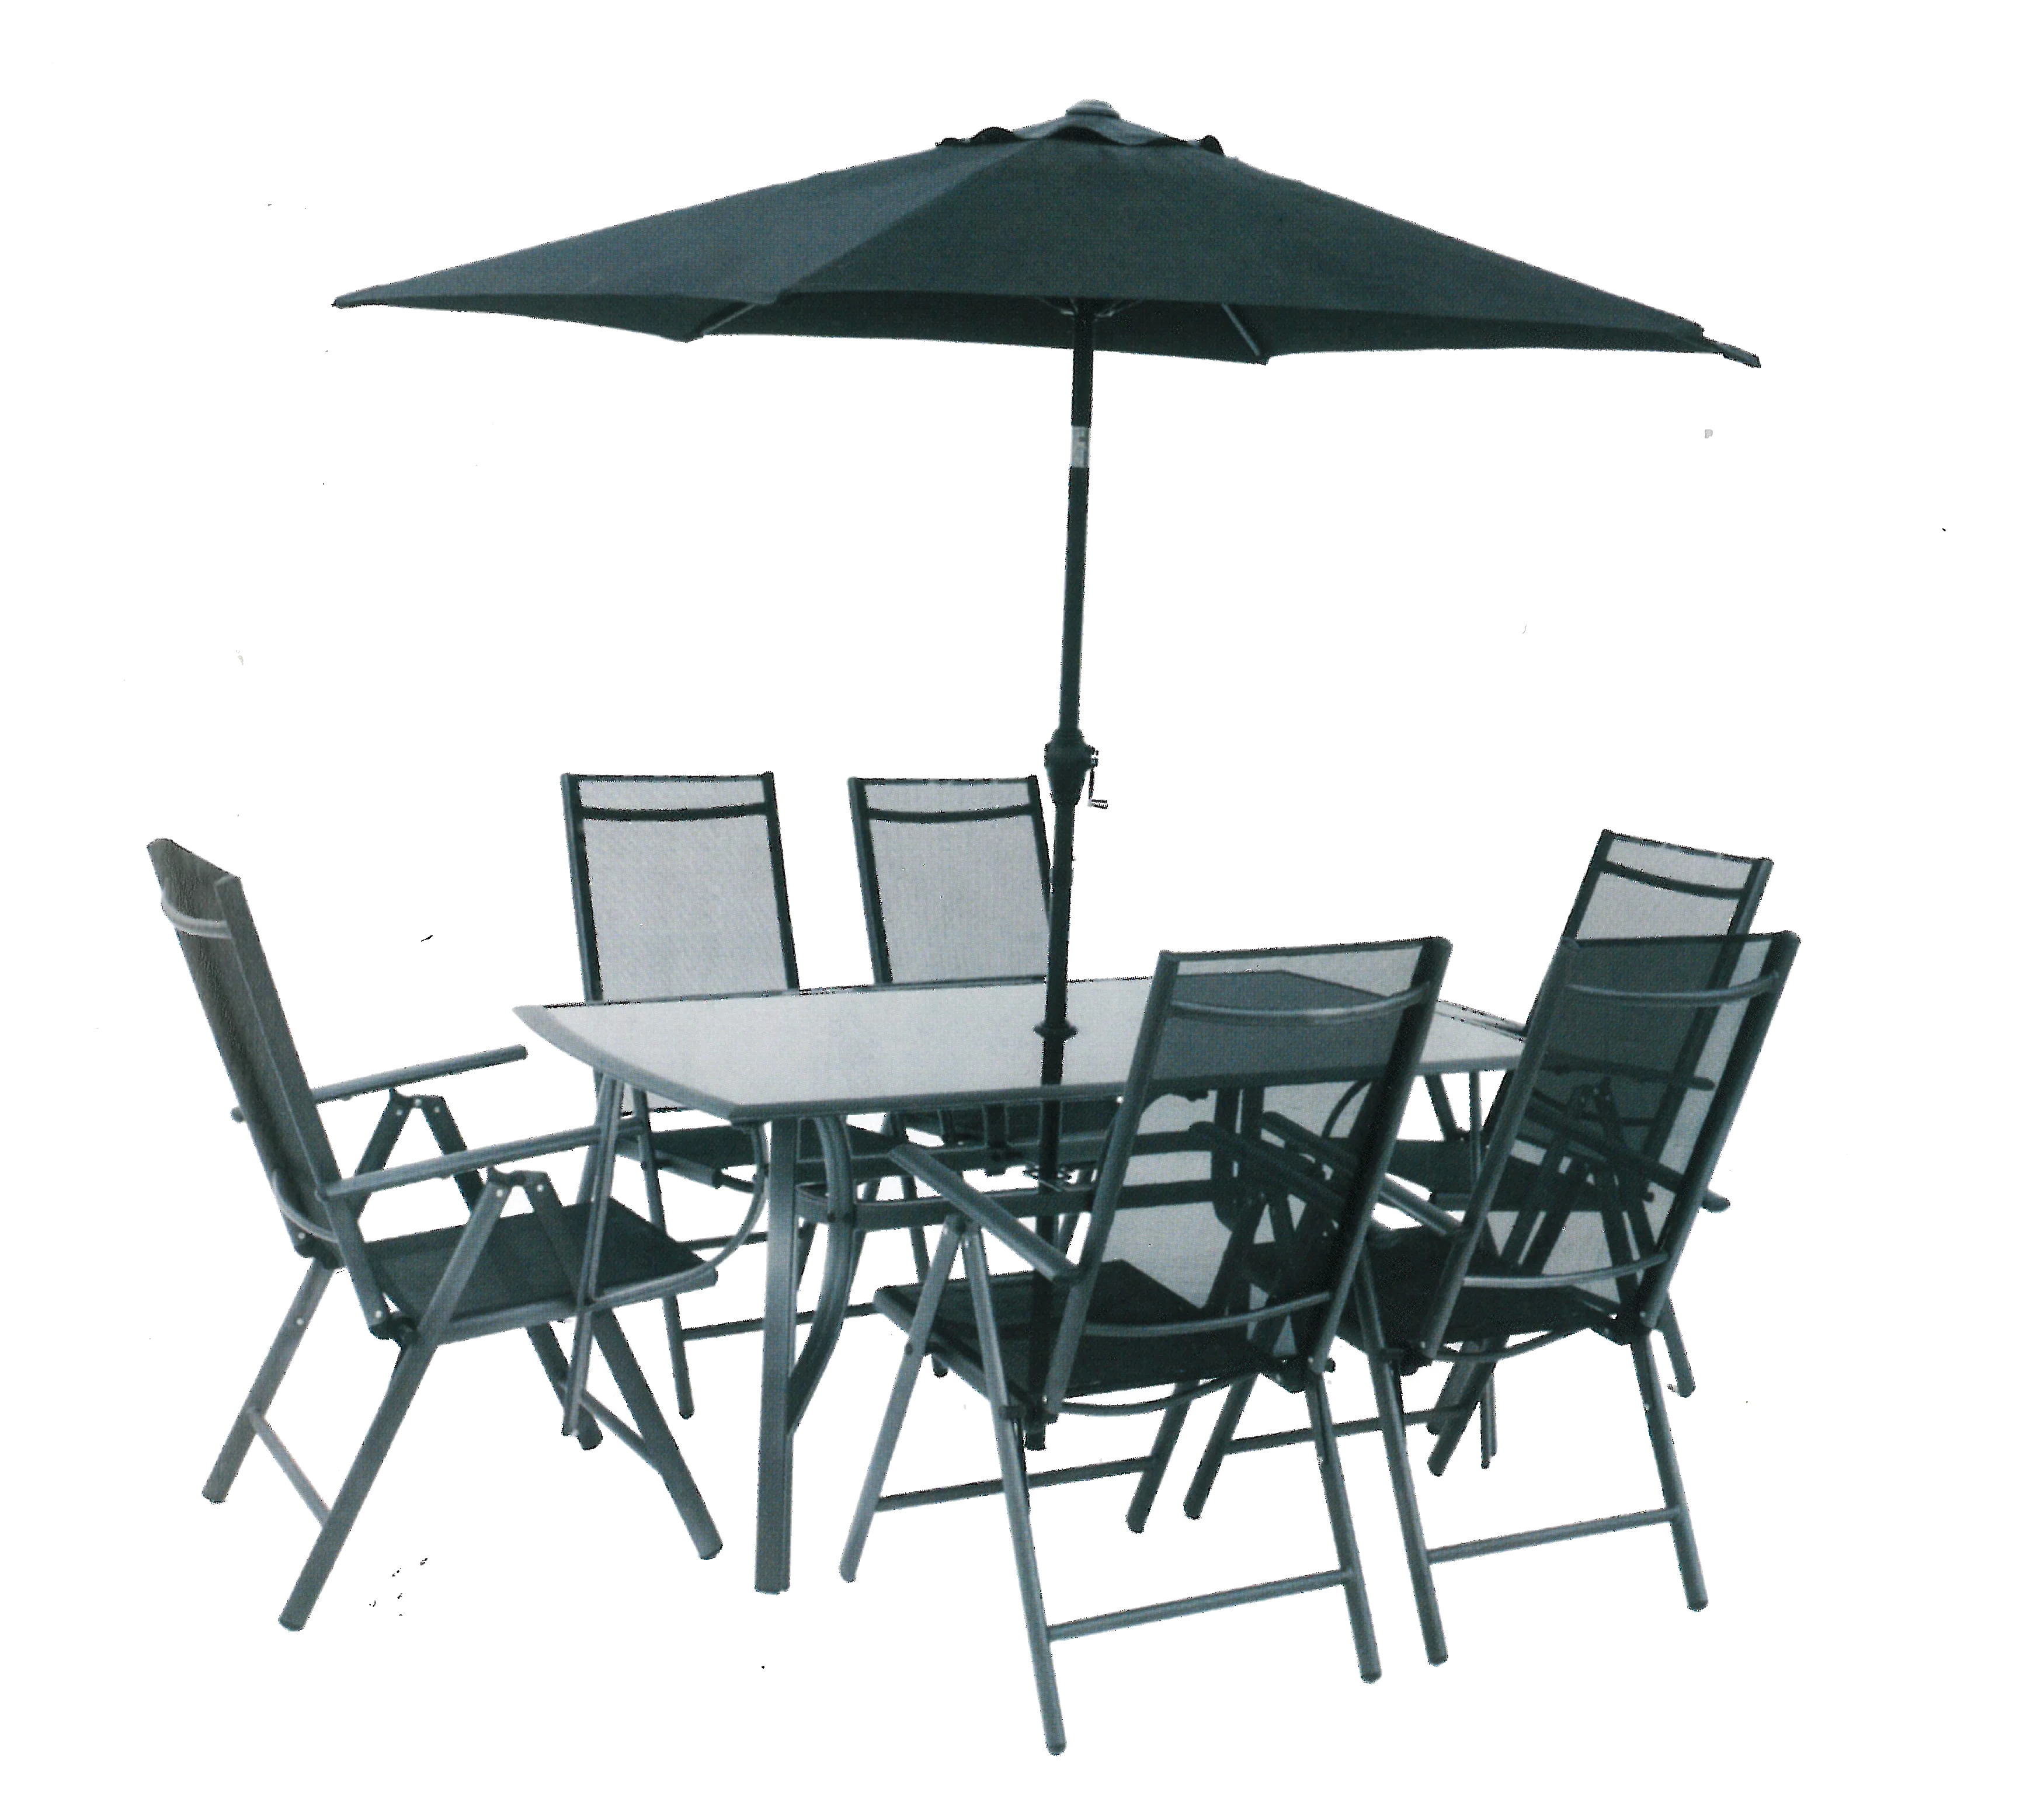 Bc 14 6 Seater Outdoor Modern Folding Table Chair Sets Patio Furniture Garden Patio Set With Umbrella Buy Garden Patio Set